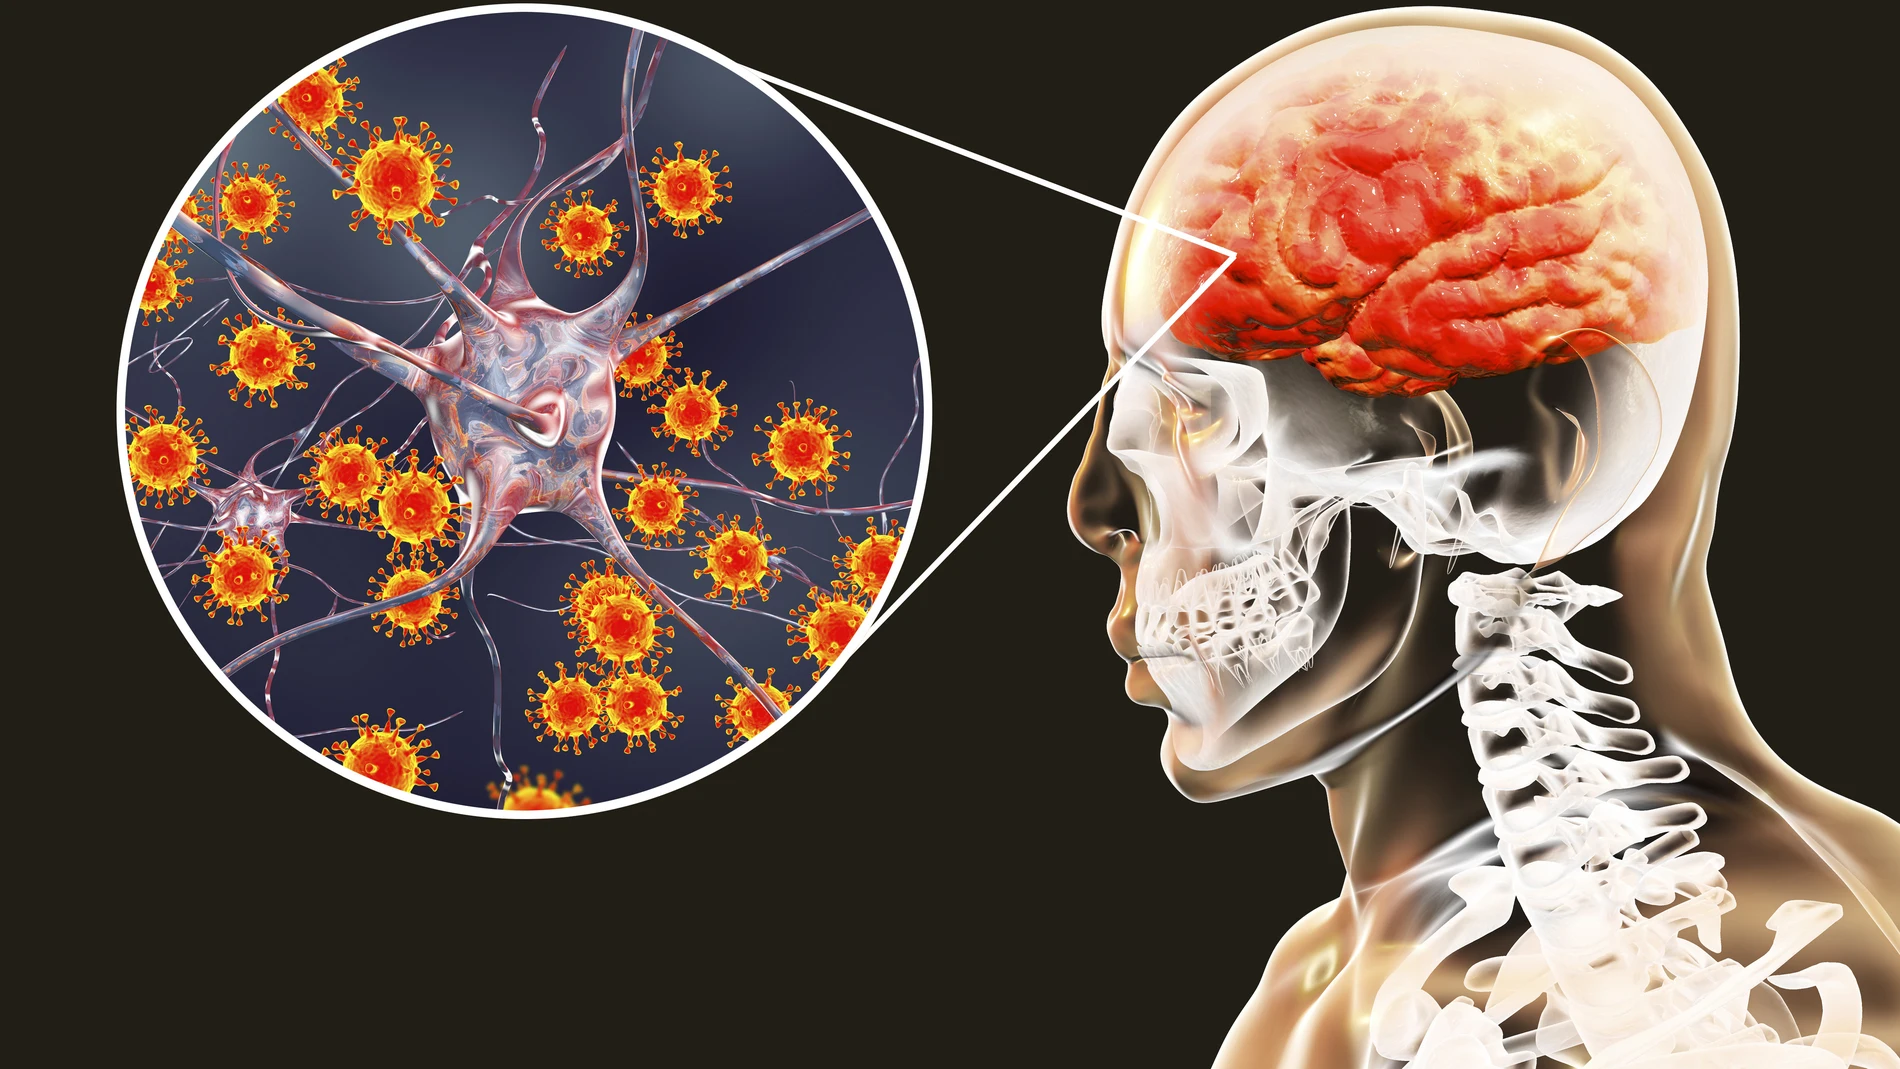 La meningitis es una inflamación de las membranas que recubren el cerebro y la médula espinal